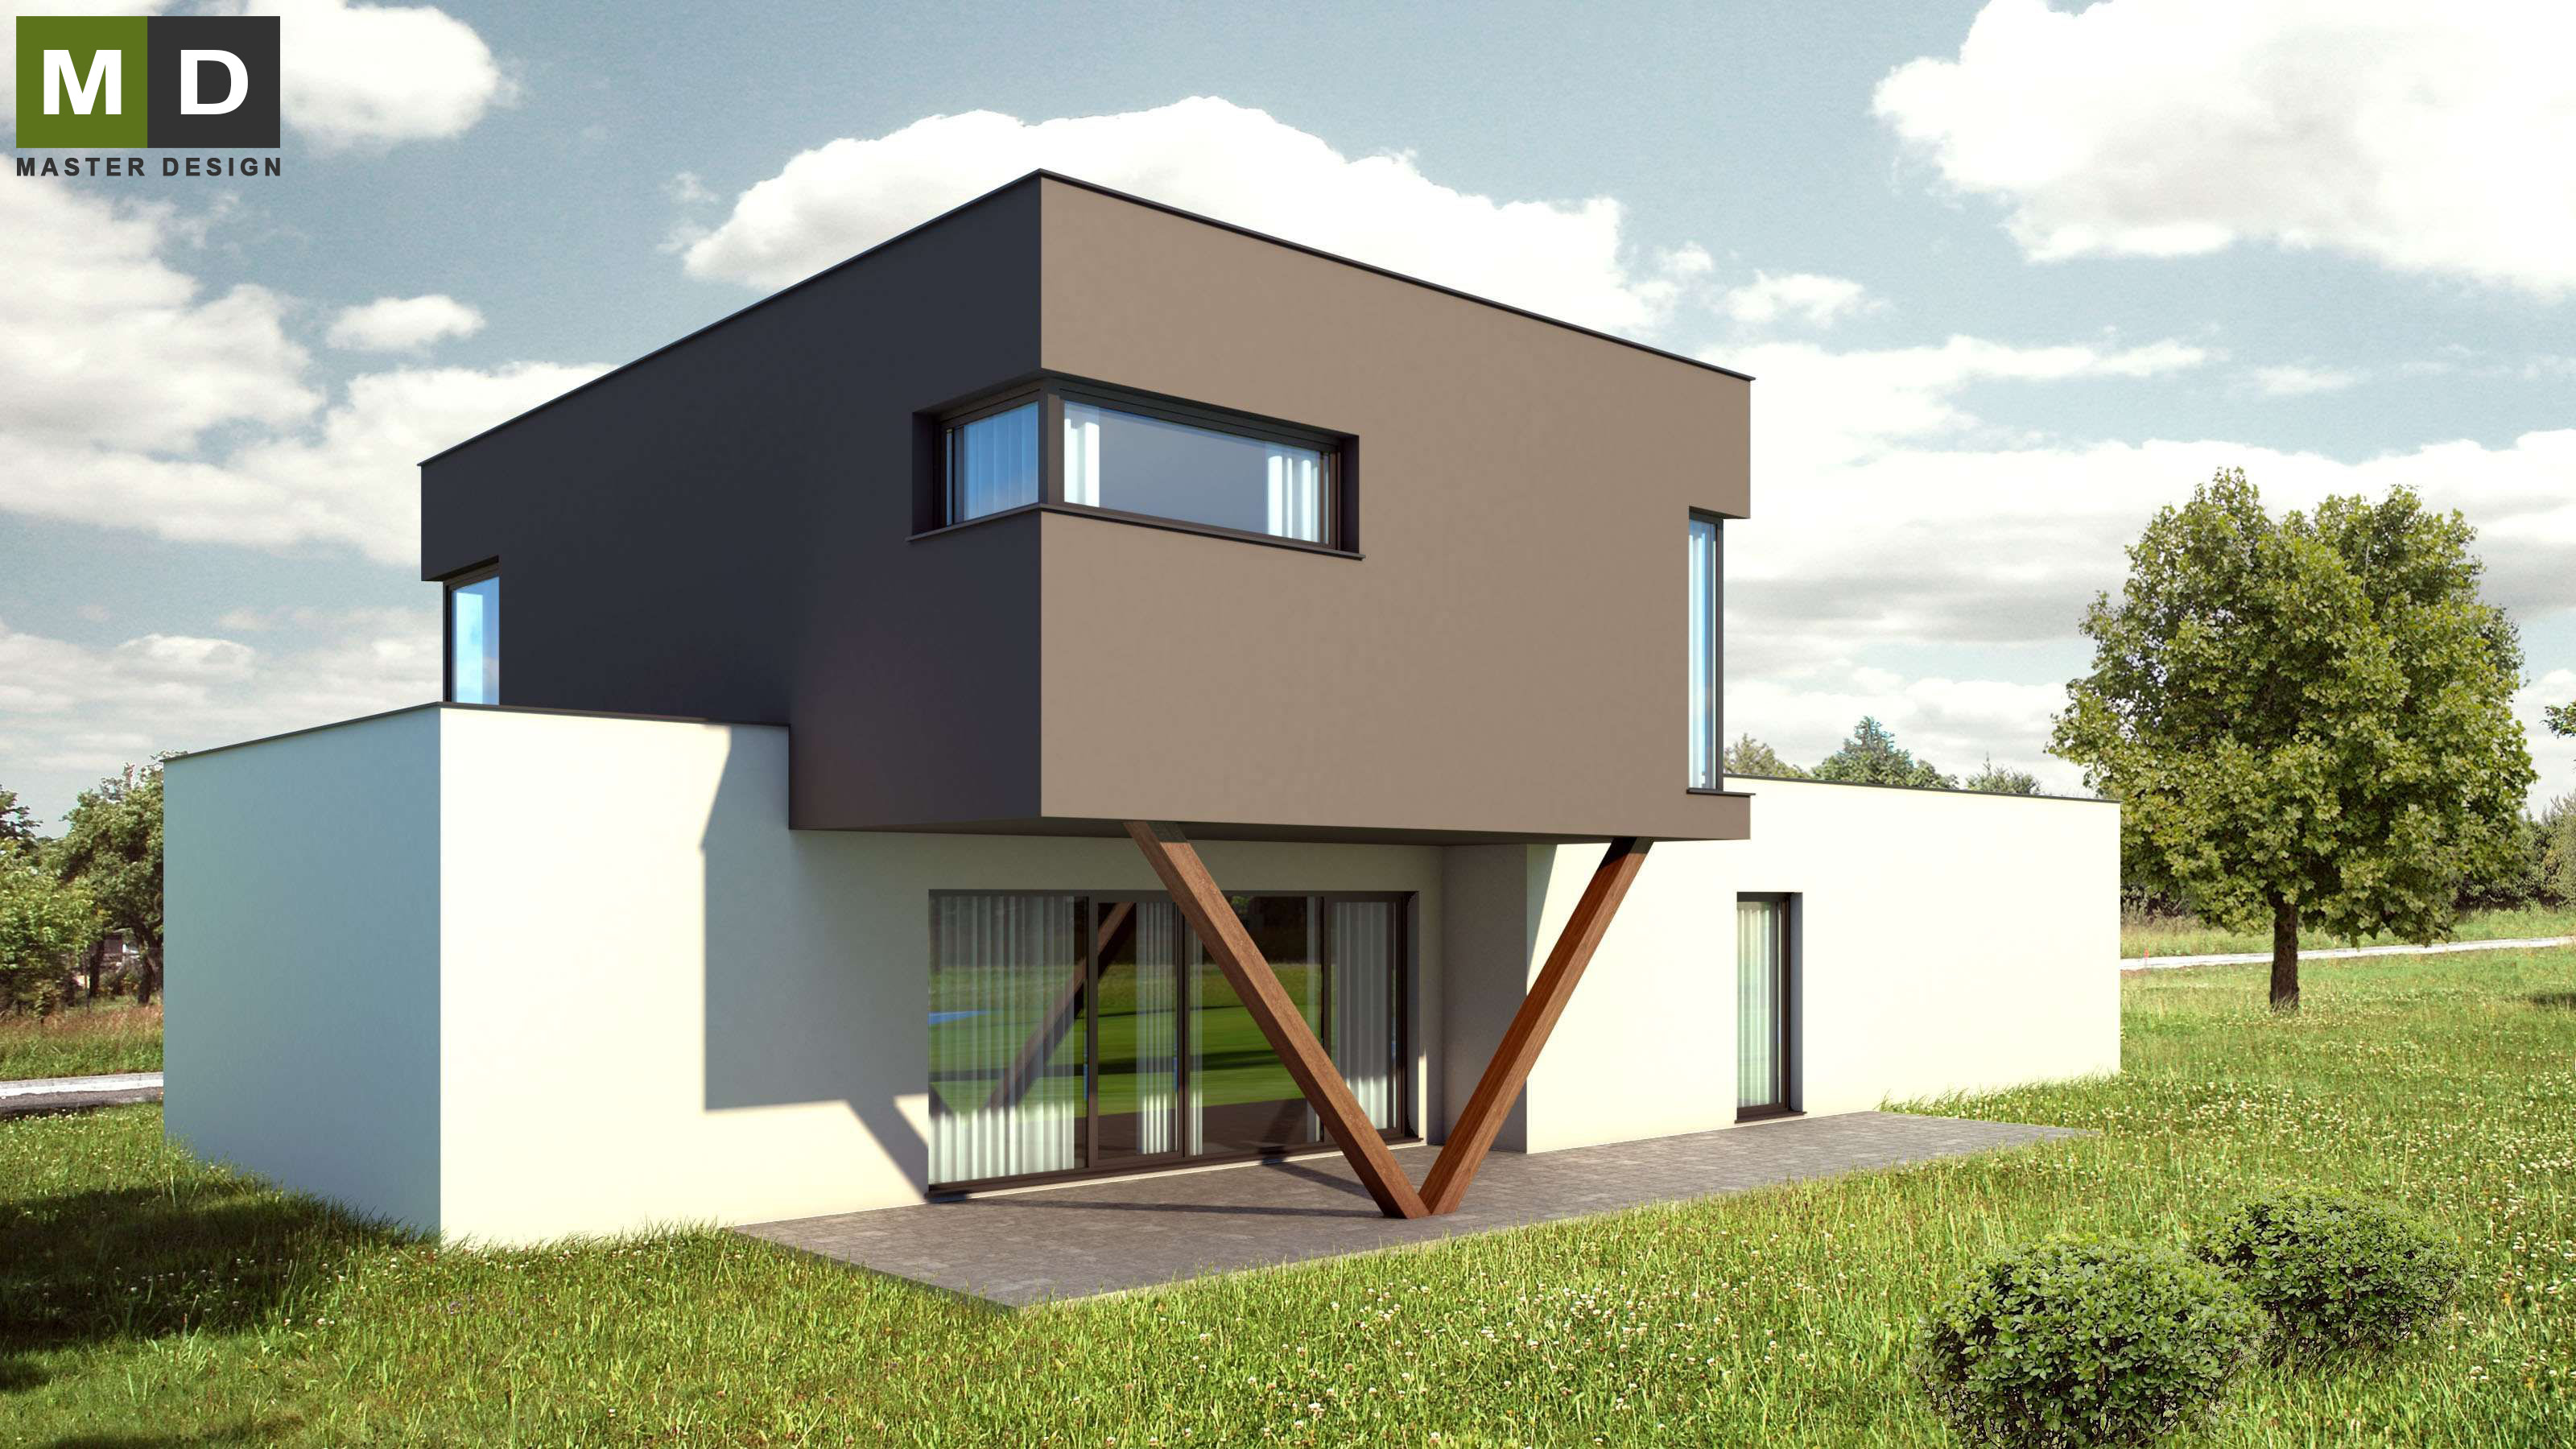 Vizualizace 2 - Dvoupatrová pasivní dřevostavba s plochou střechou - Developerský projekt do Švýcarska